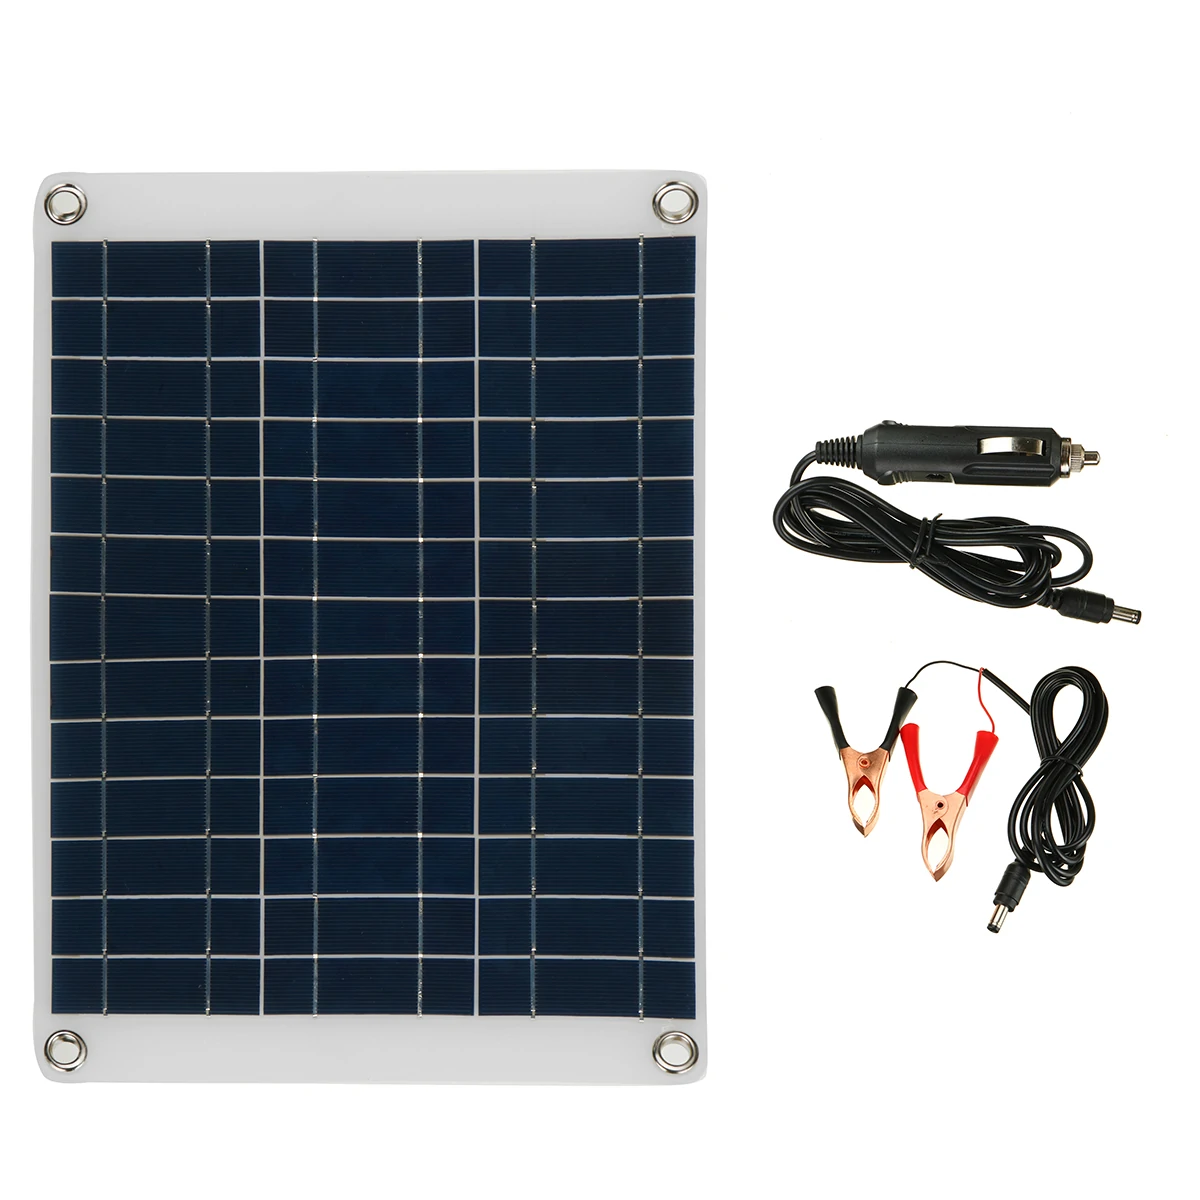 Find 20W 12V/5V Polycrystalline Solar Panel Kit Battery Charger Portable Solar Panel for Car Boat Van for Sale on Gipsybee.com